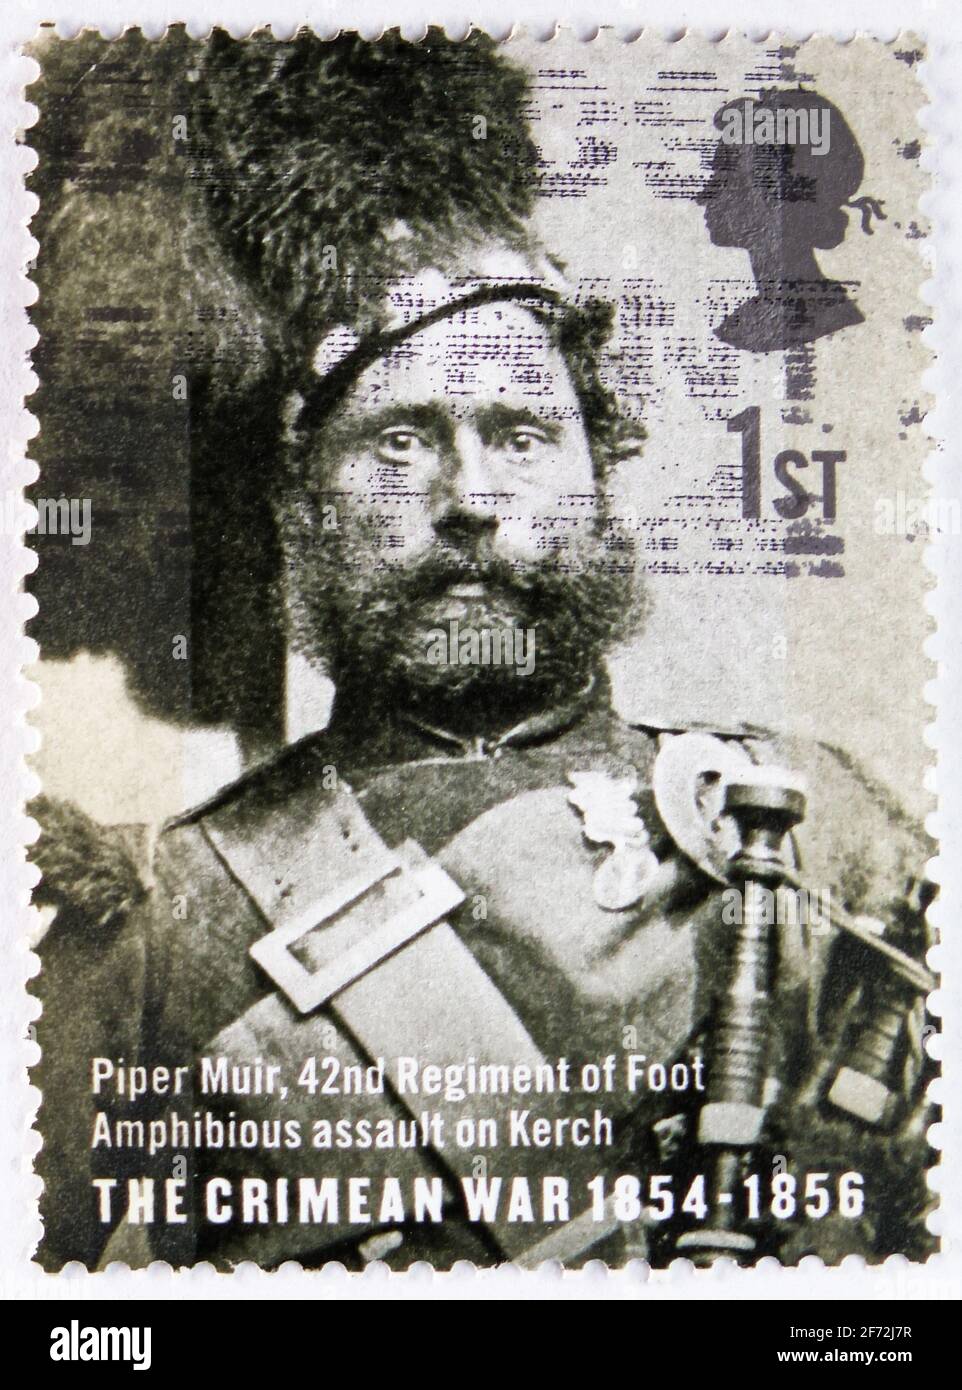 MOSCOU, RUSSIE - 22 DÉCEMBRE 2020: Timbre-poste imprimé au Royaume-Uni montre Piper Muir, la série de la Guerre de Crimée 1854-1856, vers 2004 Banque D'Images